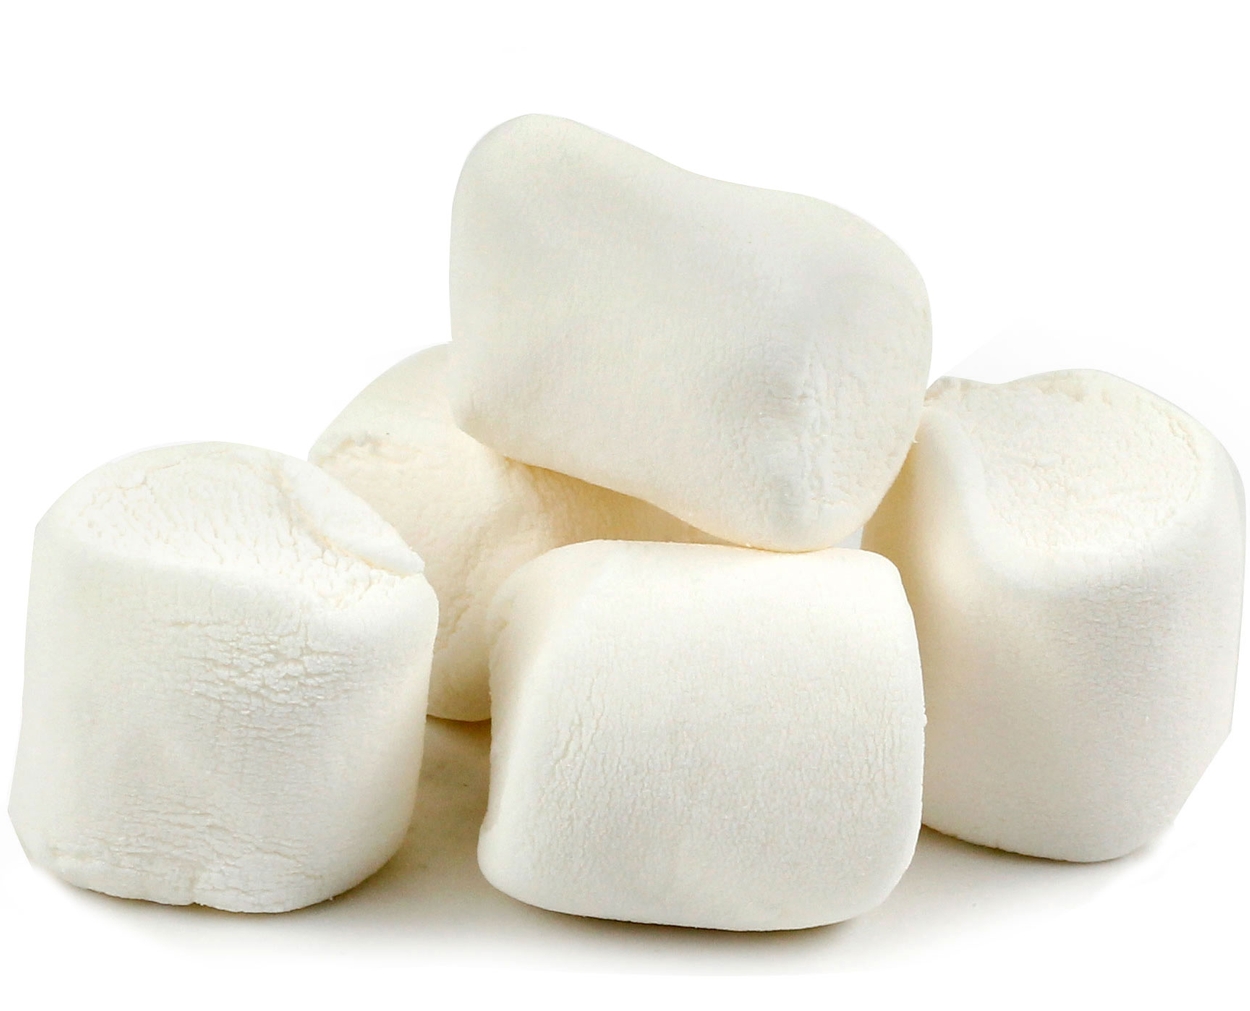 White Marshmallows